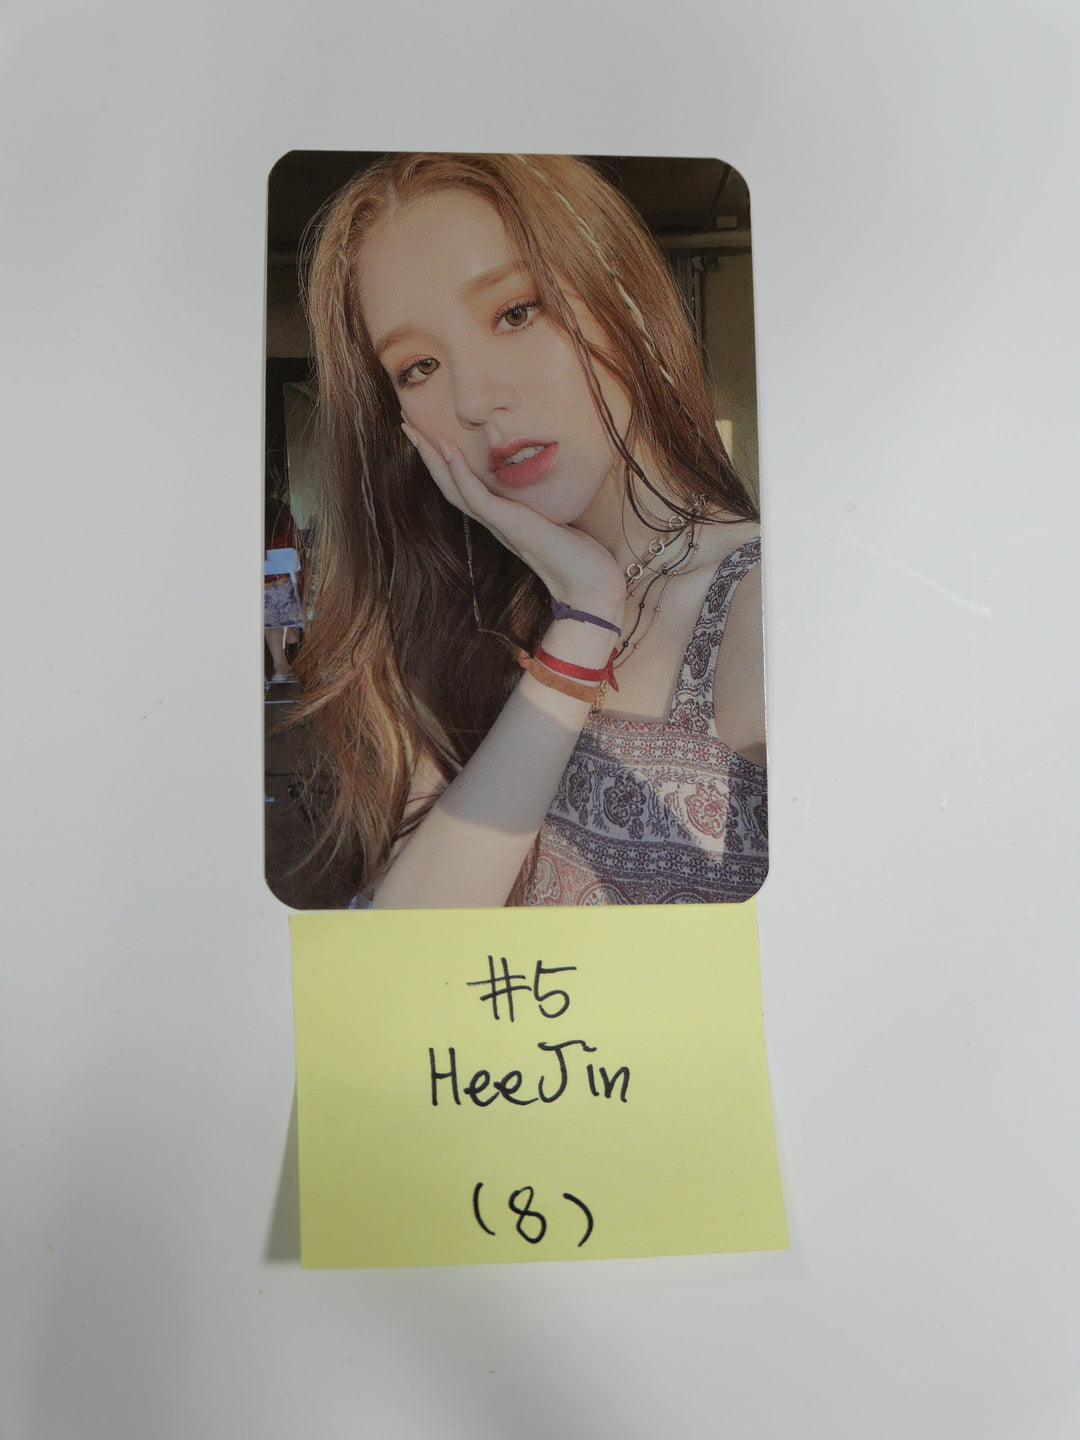 Loona 12:00 - Official Photocard - Heejin